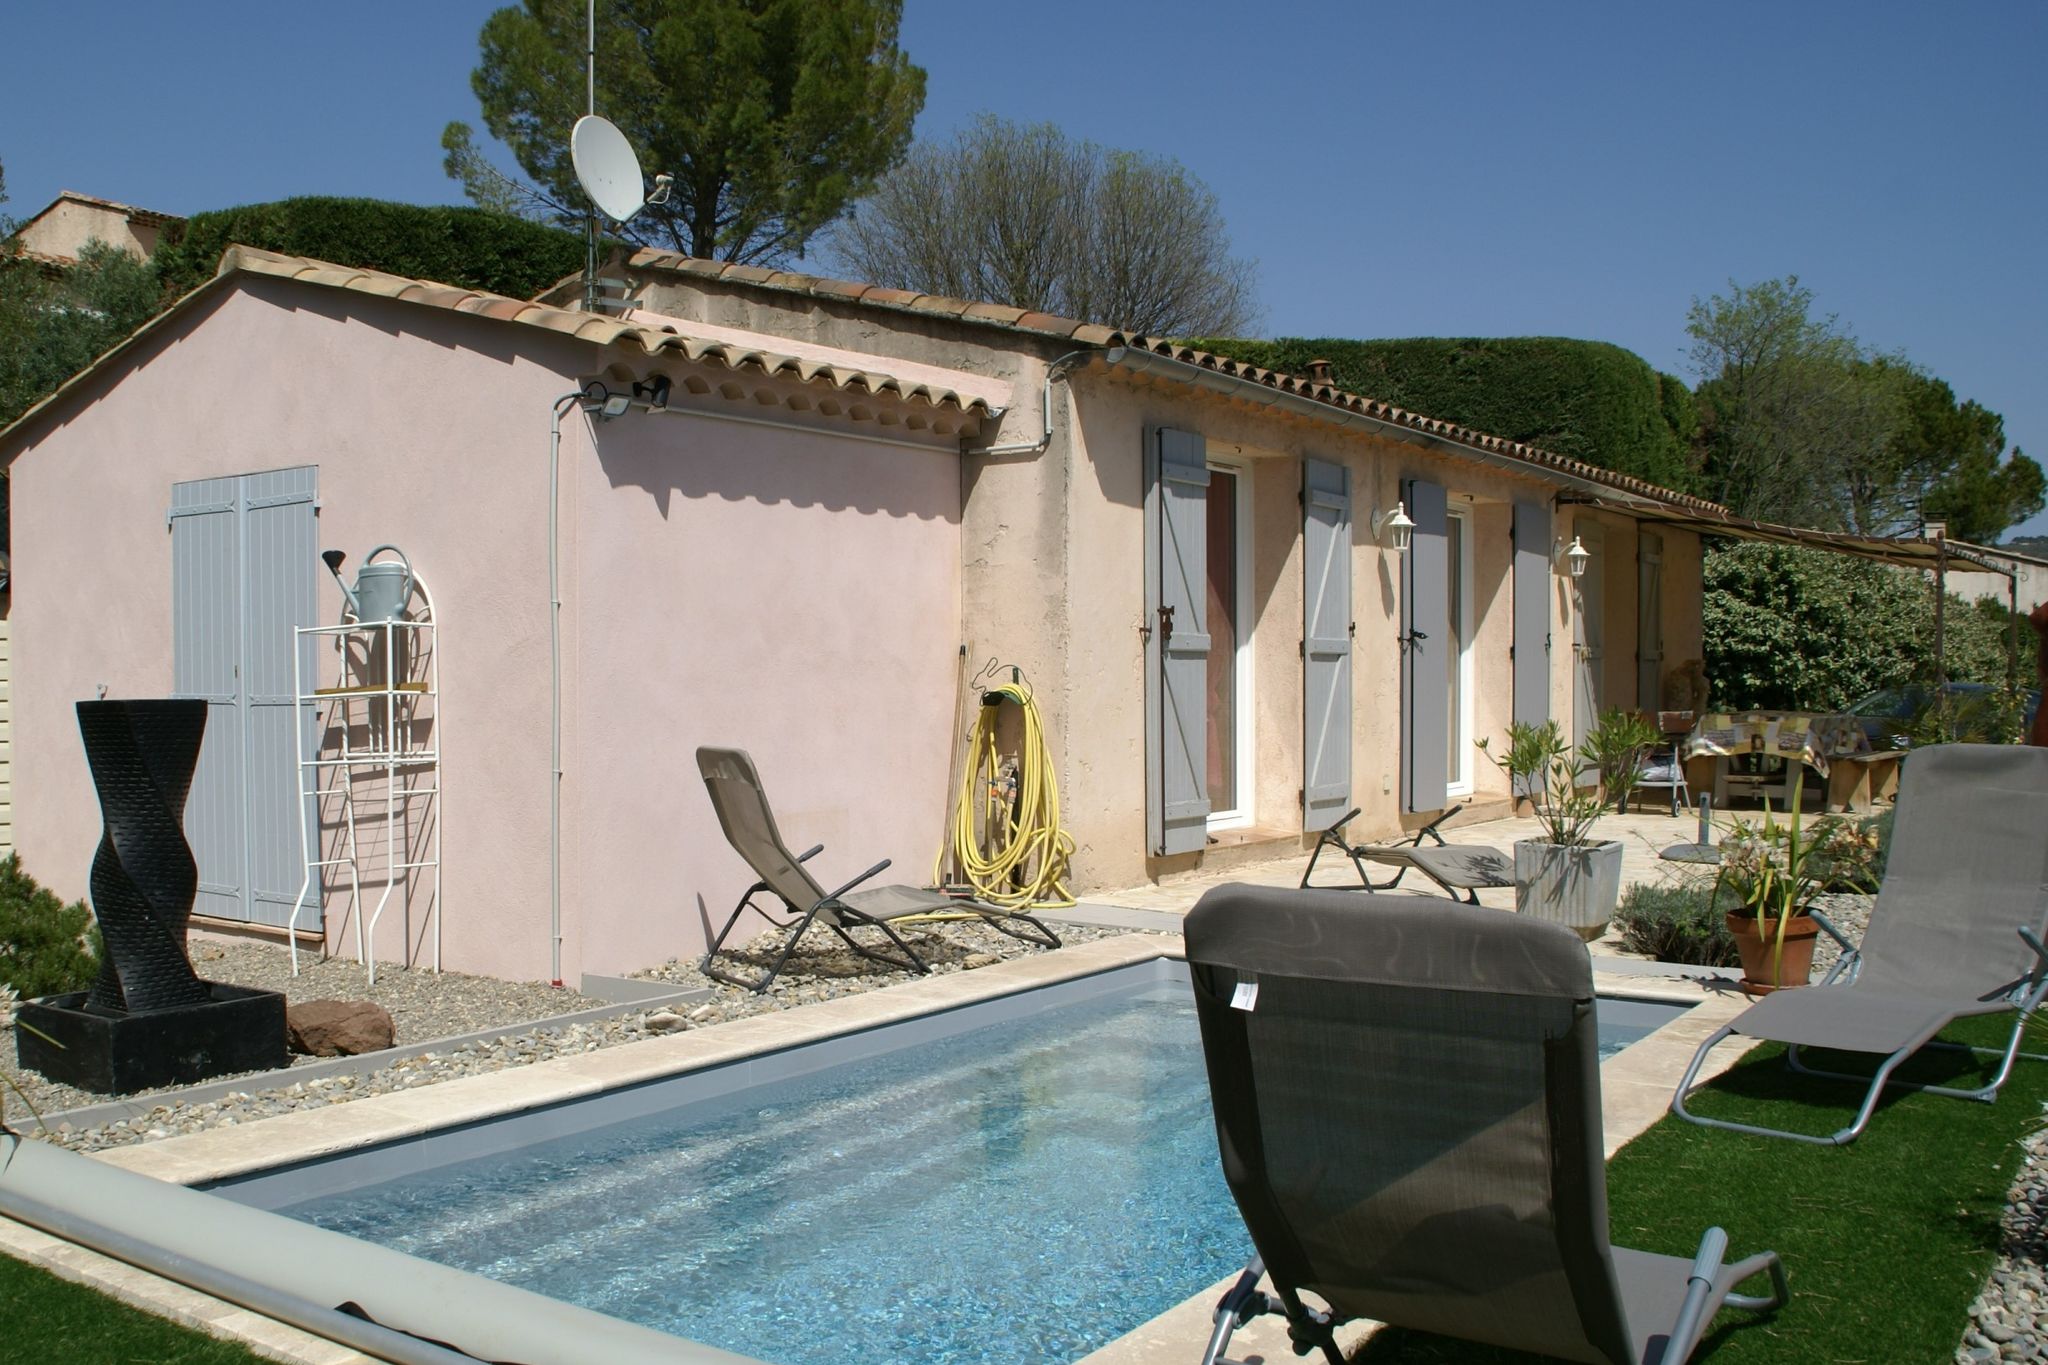 Romantisches Ferienhaus mit kleinem Privatpool in der Provence.